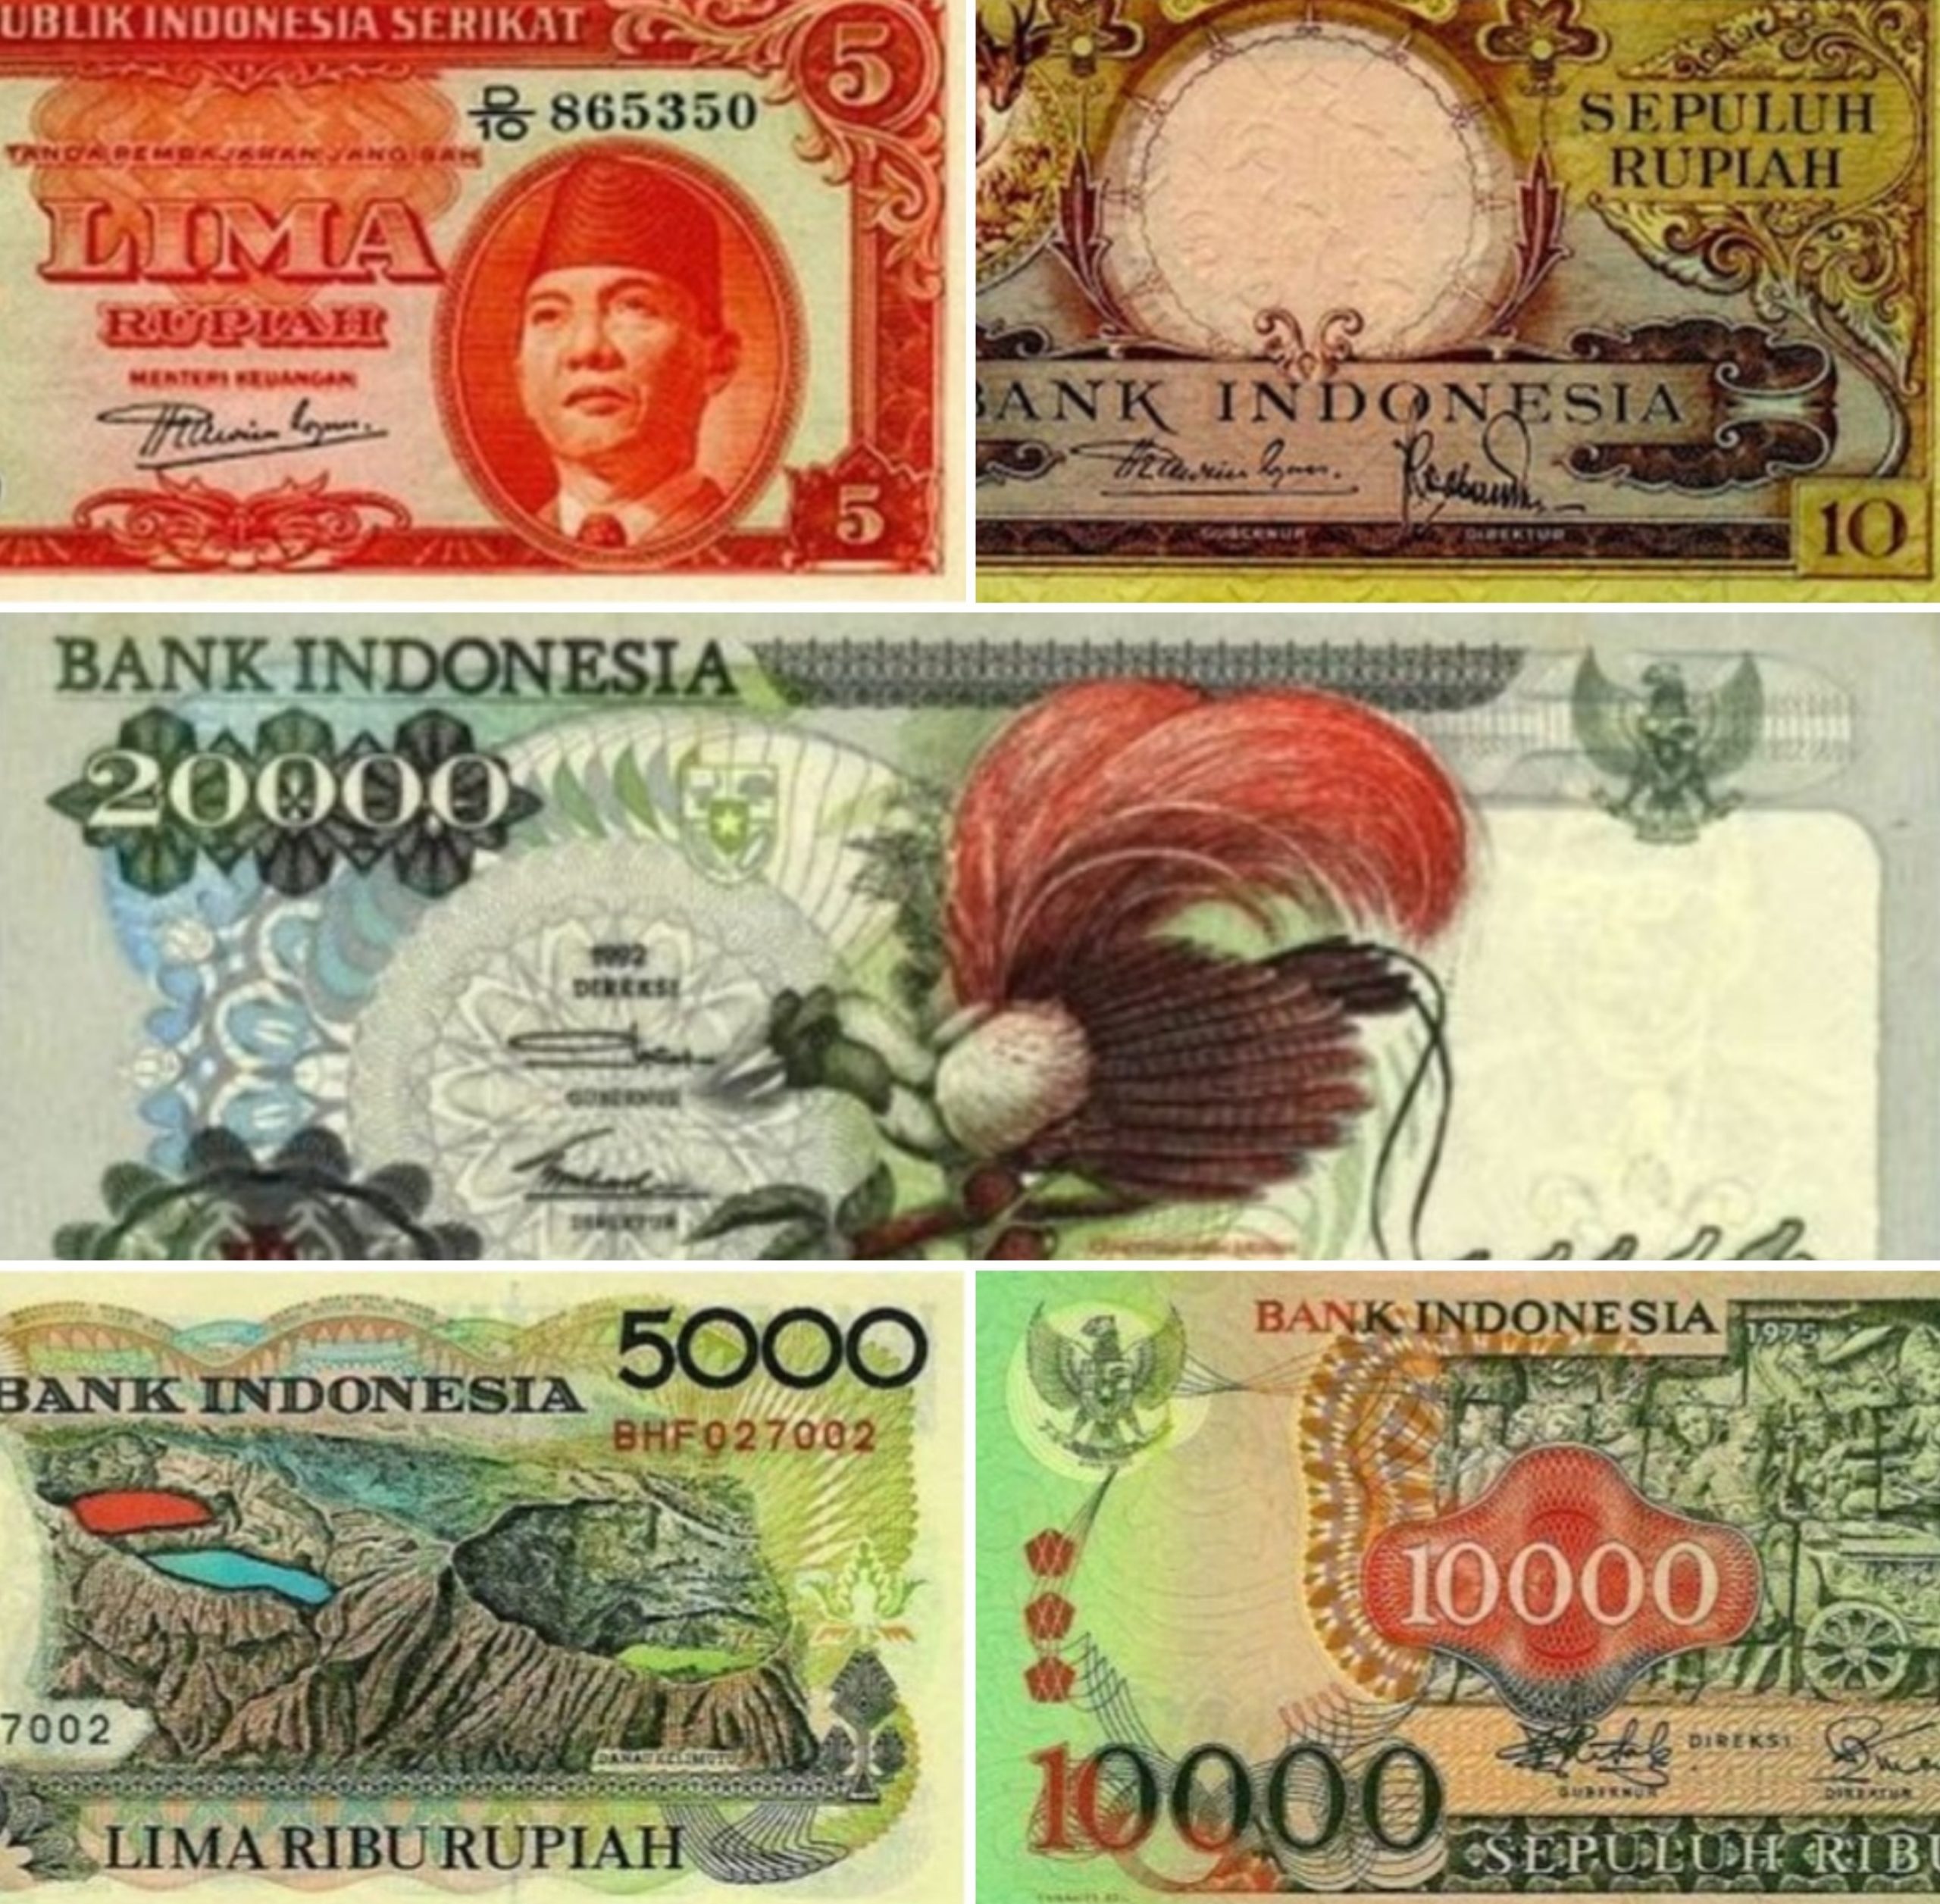 Harga Uang Lama di Bank Indonesia: Apakah Masih Berharga?